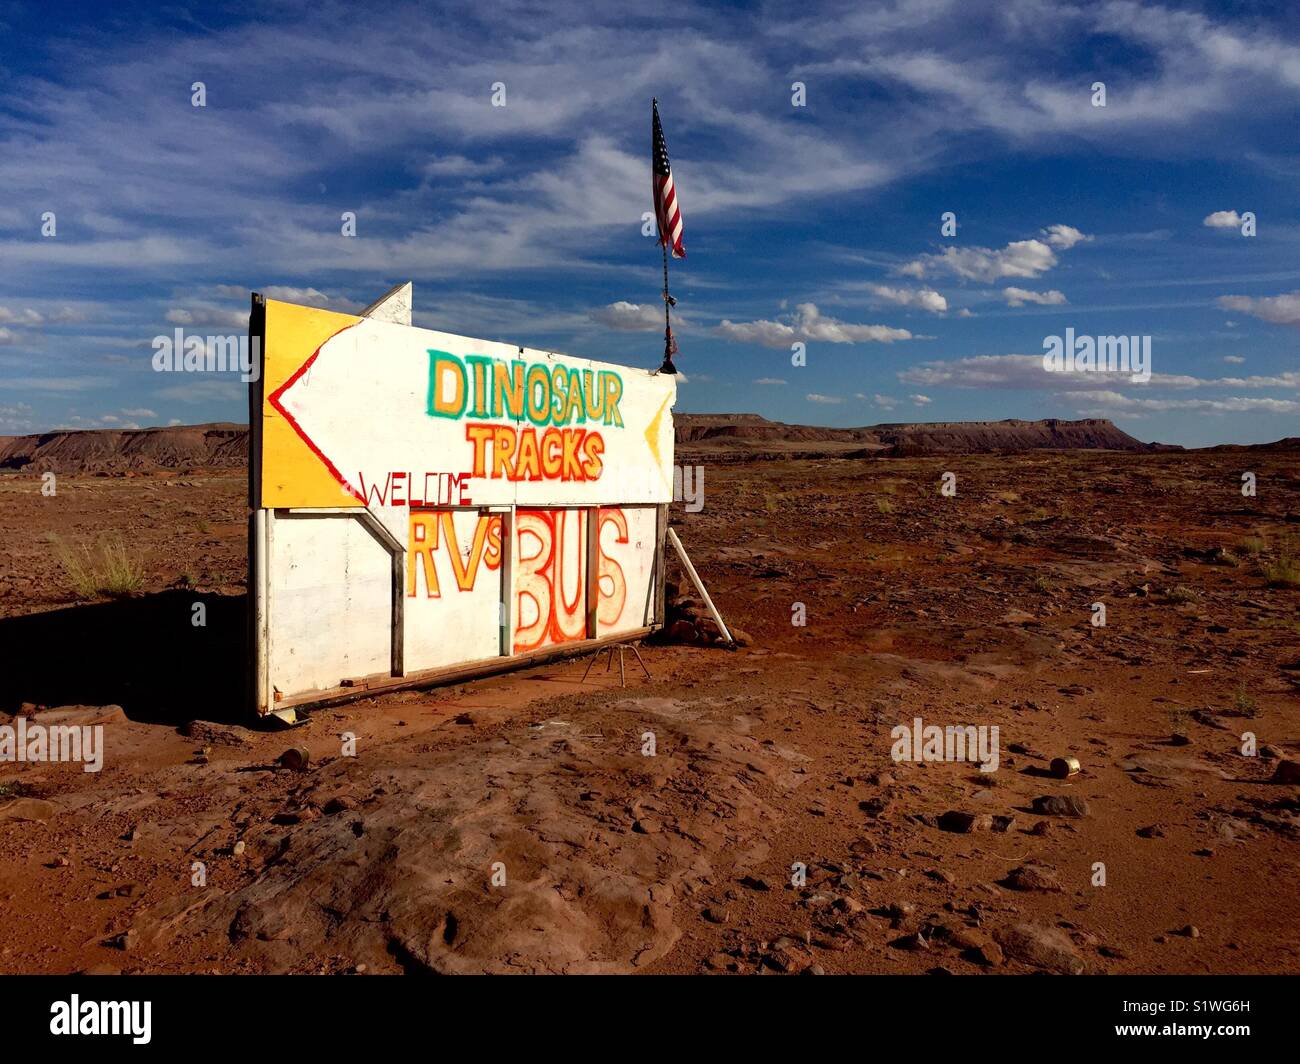 'DINOSAUR VIE BENVENUTI RVs BUS' firmare in Northern Arizona vicino a Cameron Trading Post. Foto Stock